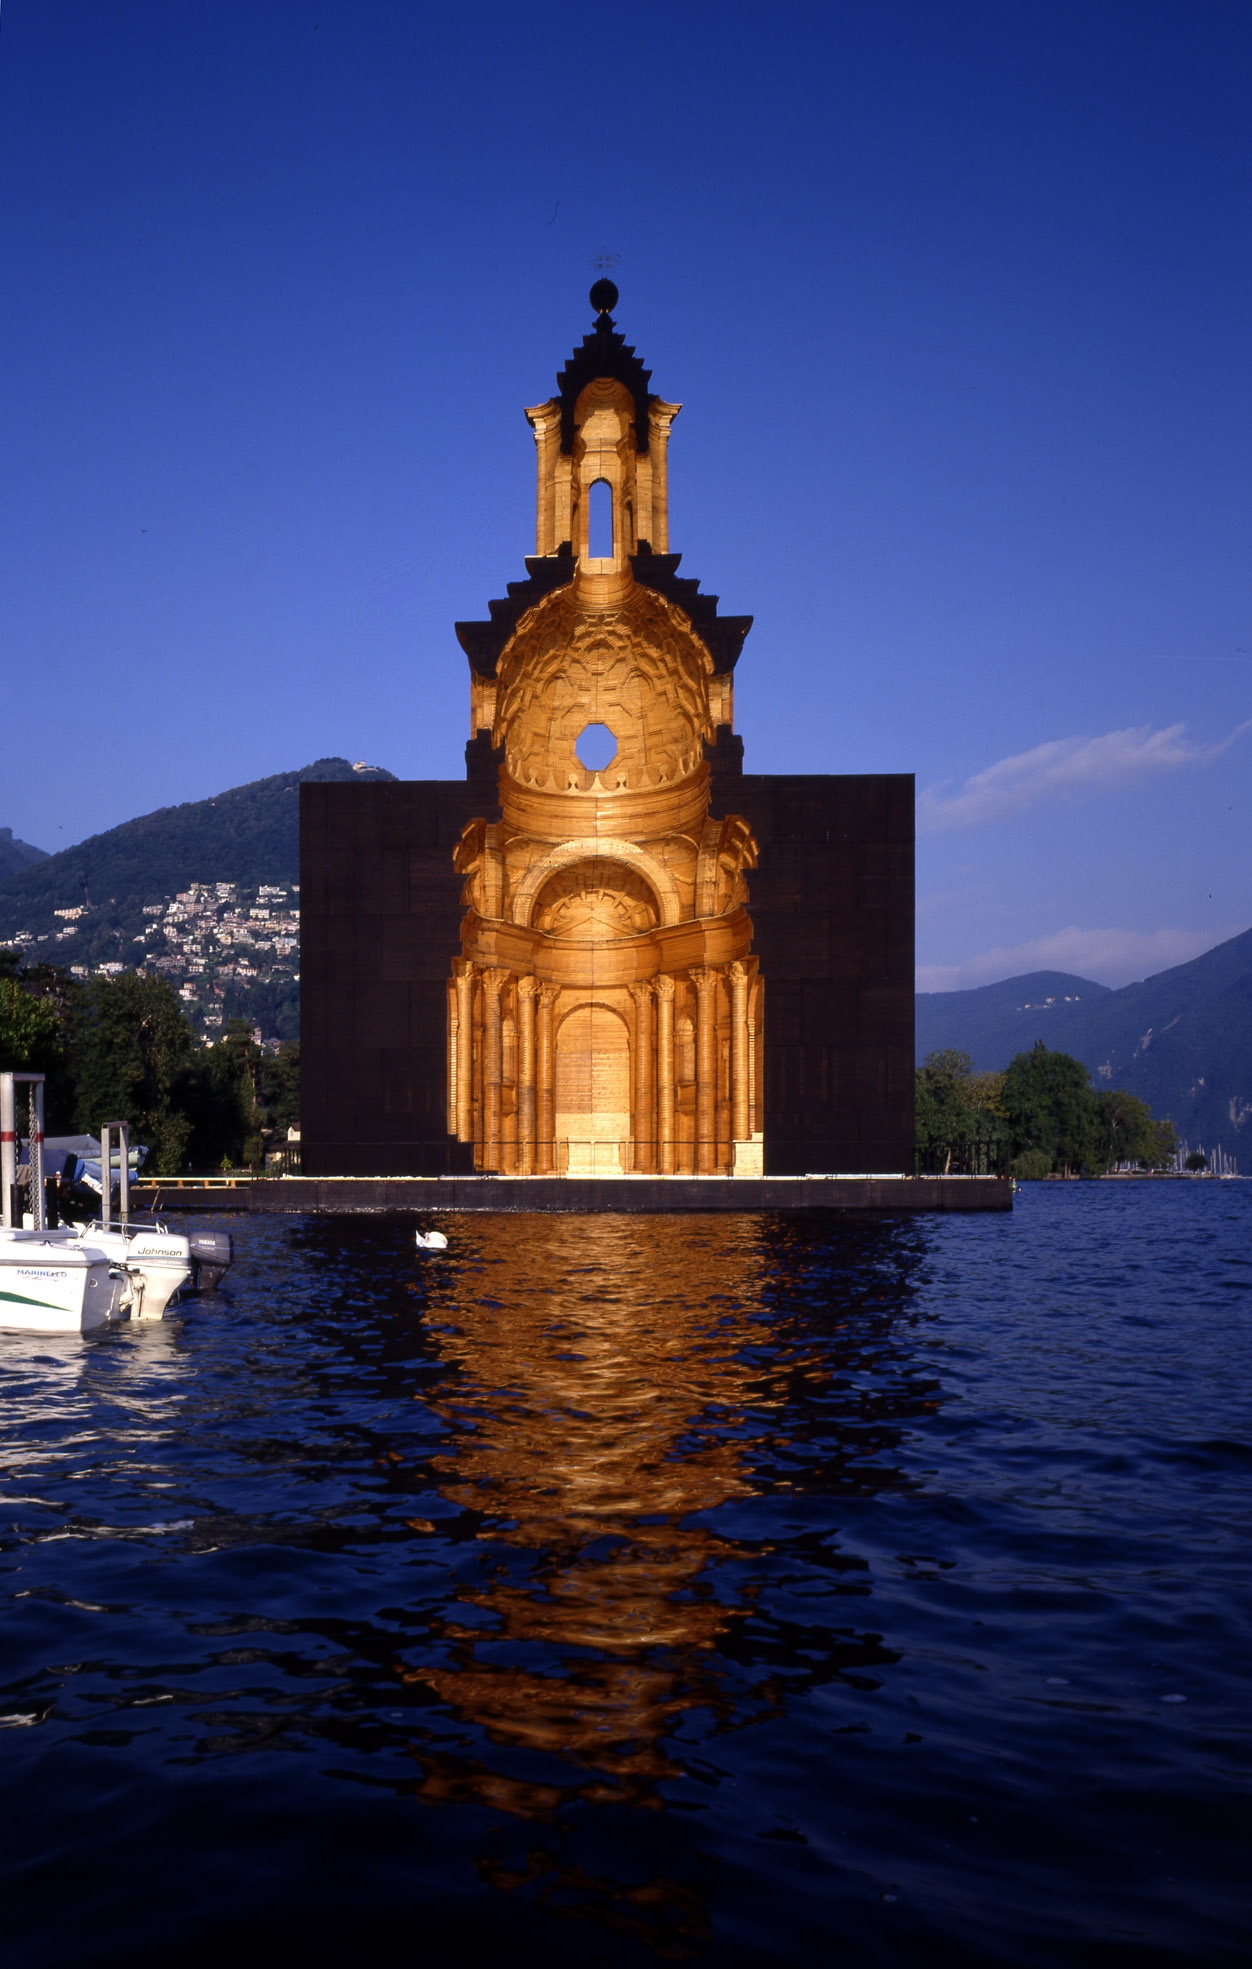 Copia in legno della chiesa di Francesco Borromini San Carlo alle Quattro Fontane sul lago di Lugano, 1999-2003, fotografia: Pino Musi